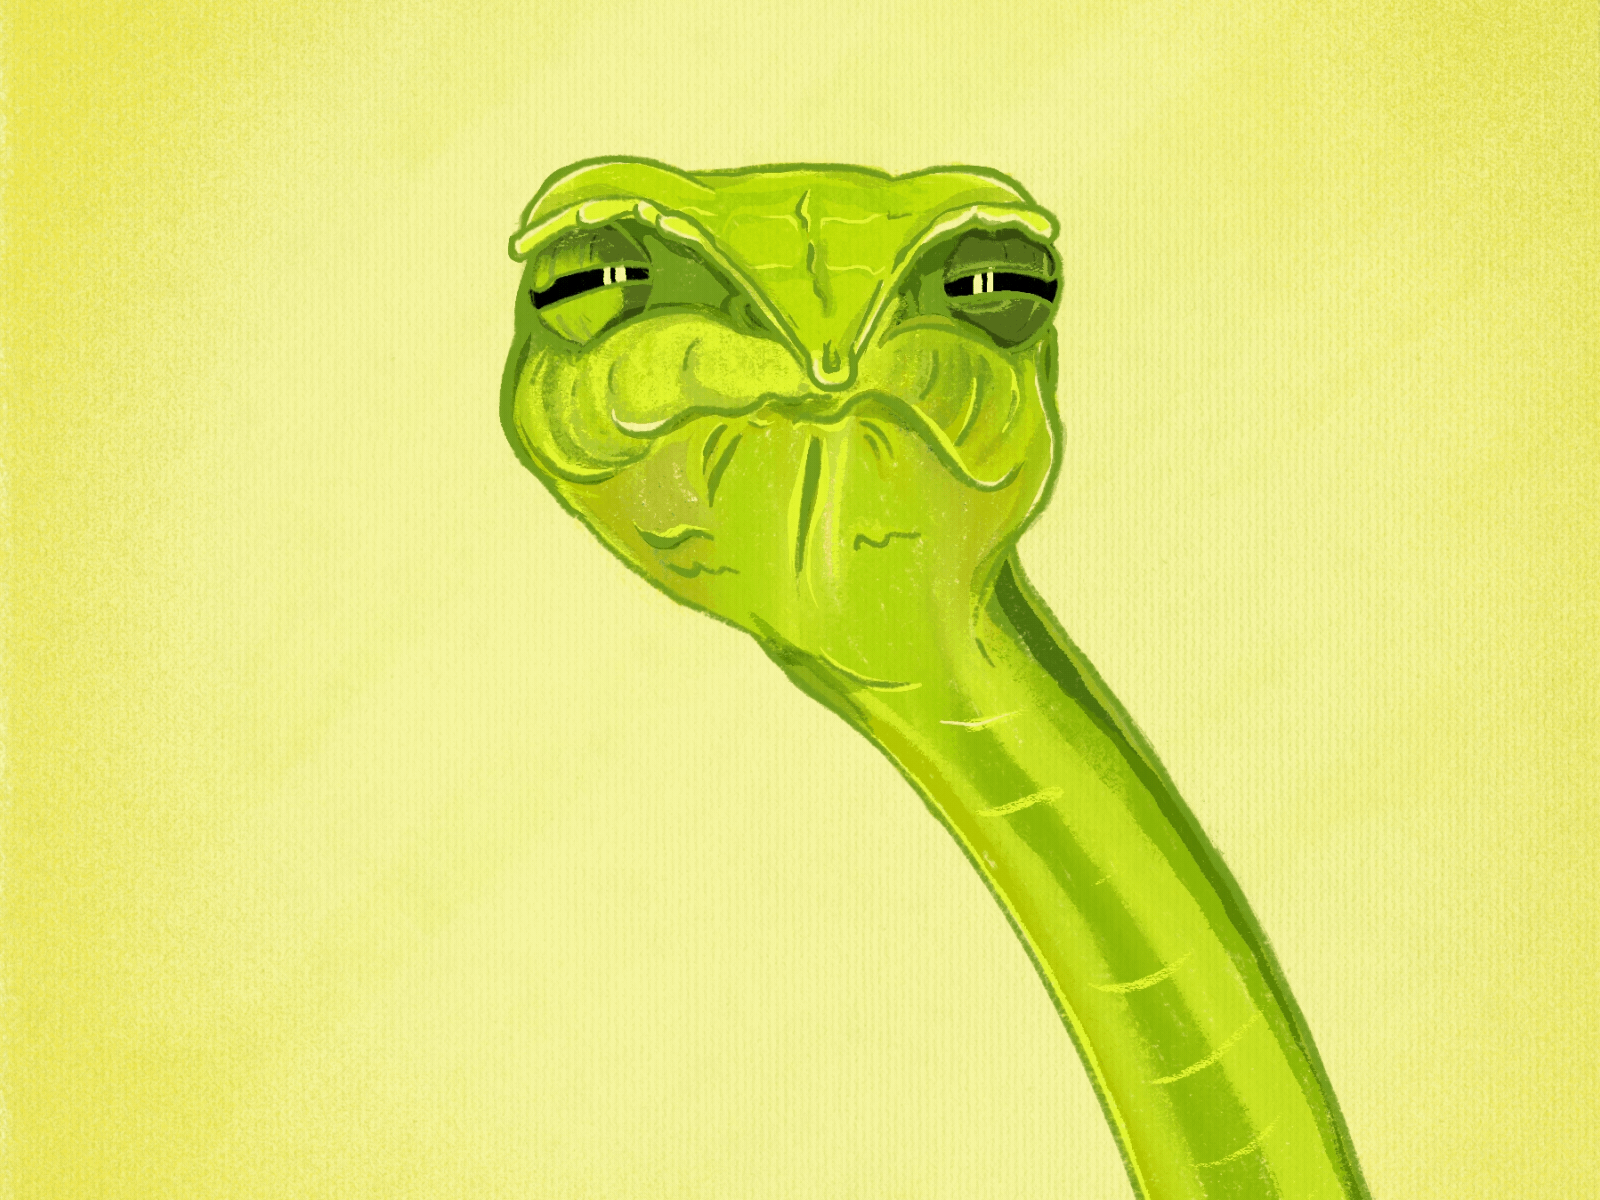 Judging you... animation avatar framebyframe gif illustration ipadpro portrait procreate snake